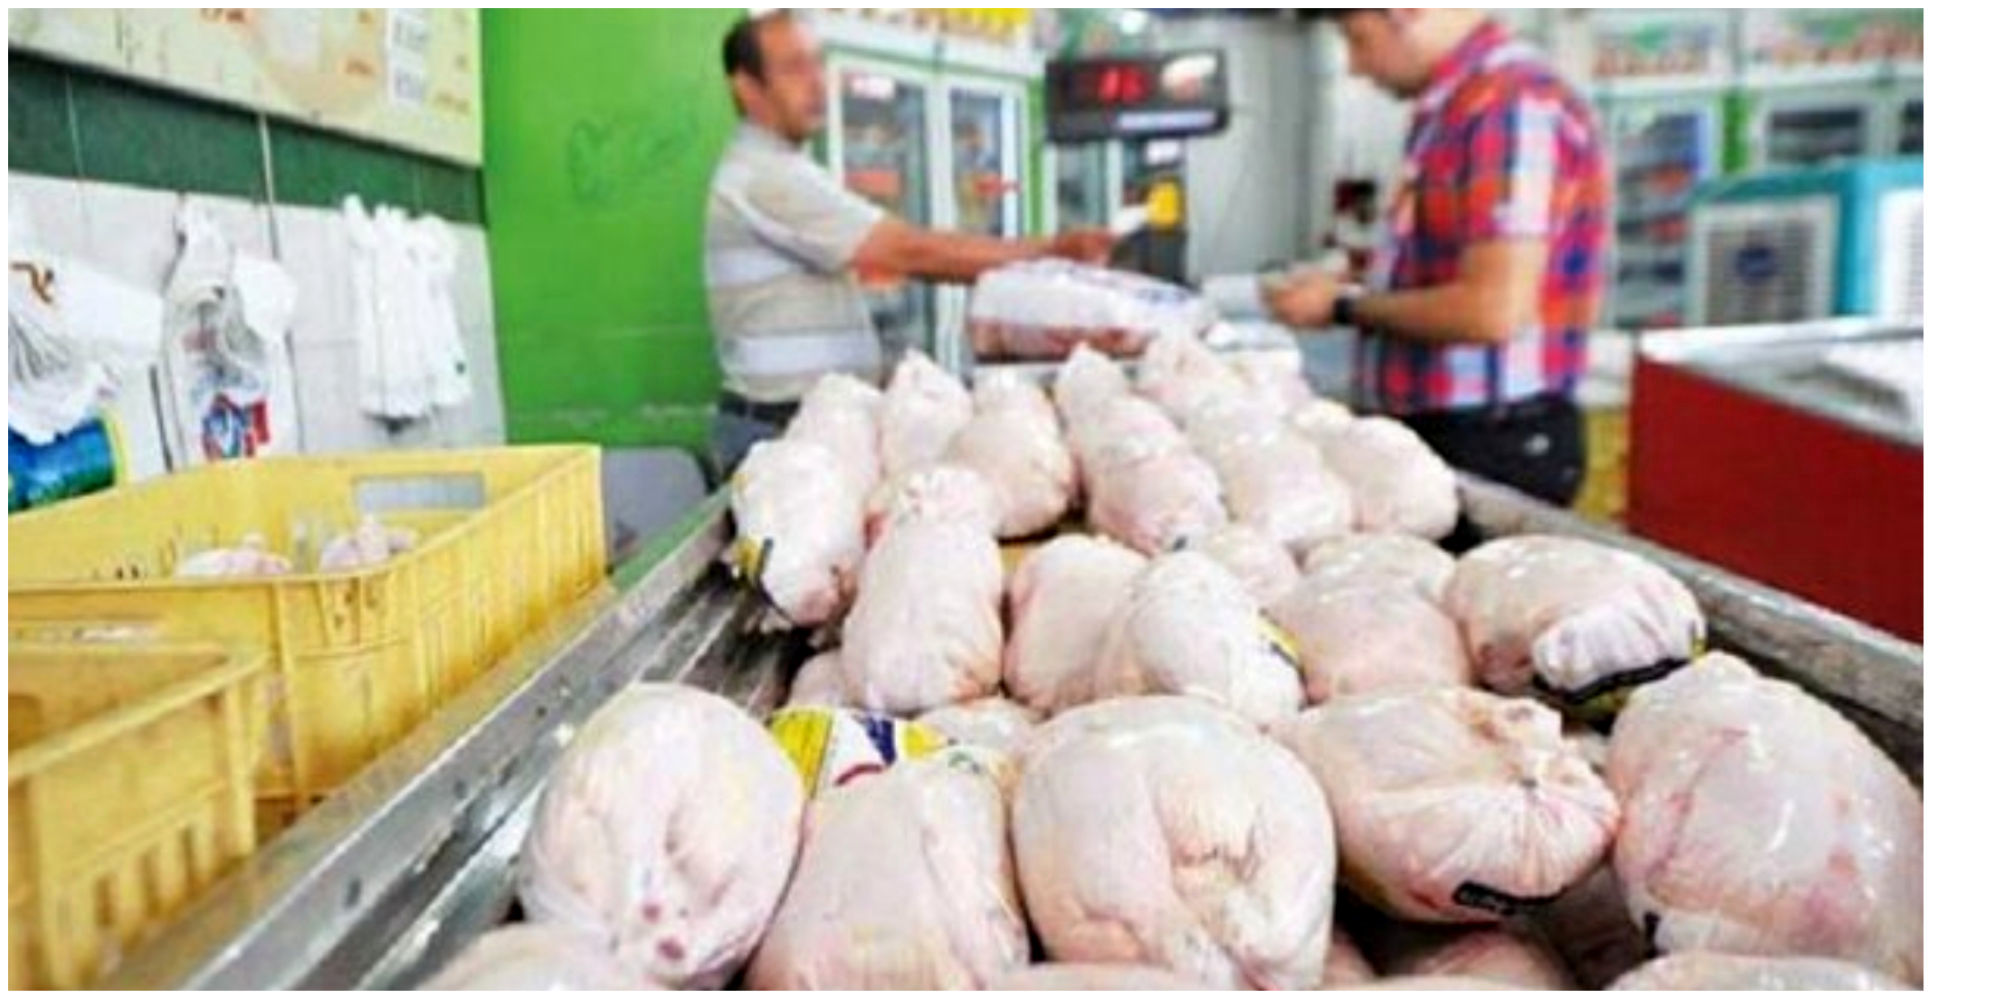 قیمت مرغ در بازار امروز 6 تیر اعلام شد | قیمت مرغ گرم در میادین تره بار کیلویی چند؟